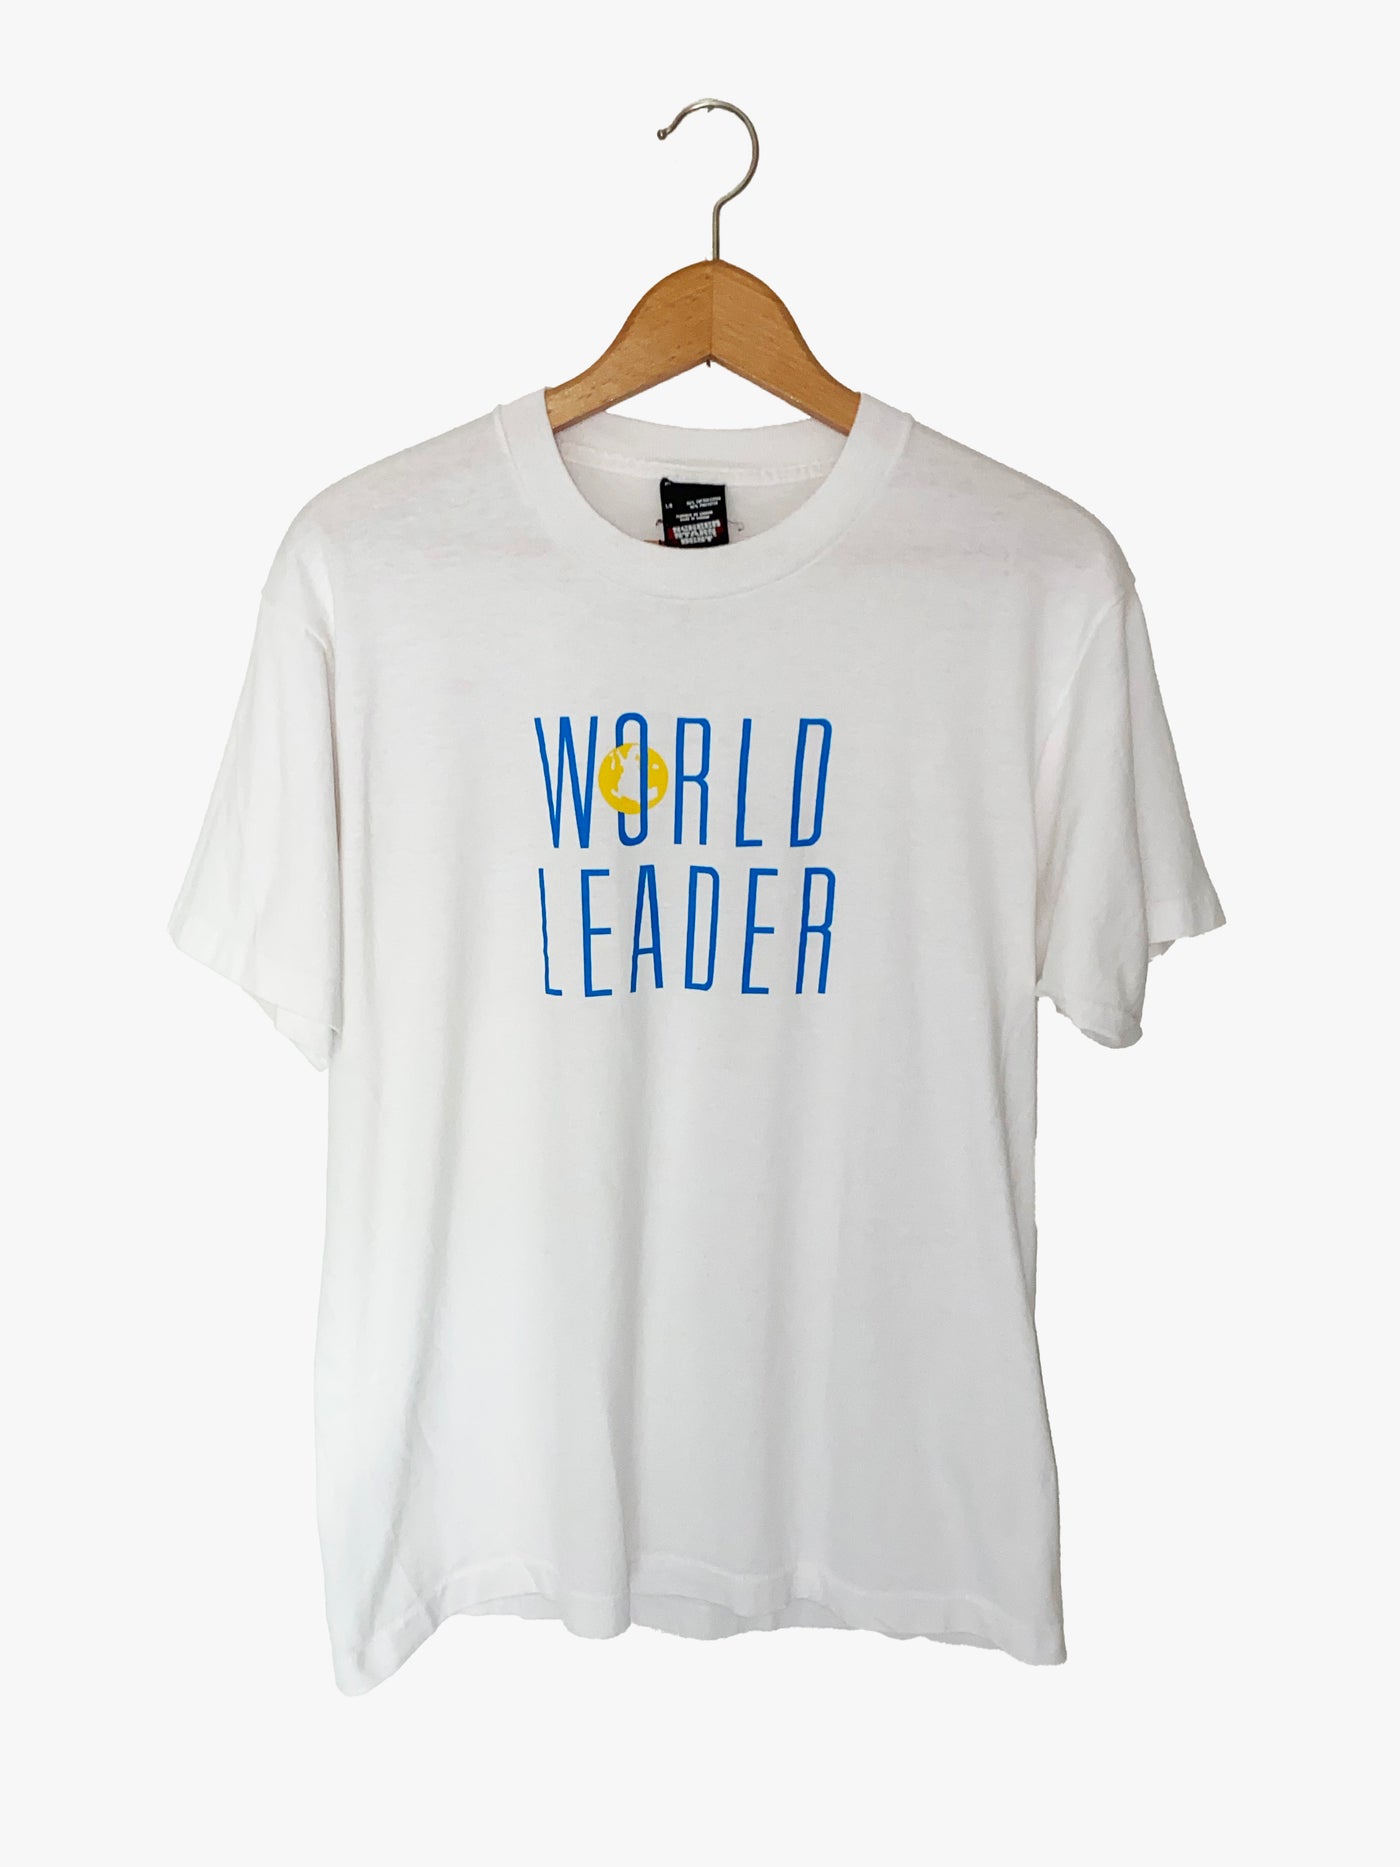 Vintage 90s World Leader T-Shirt